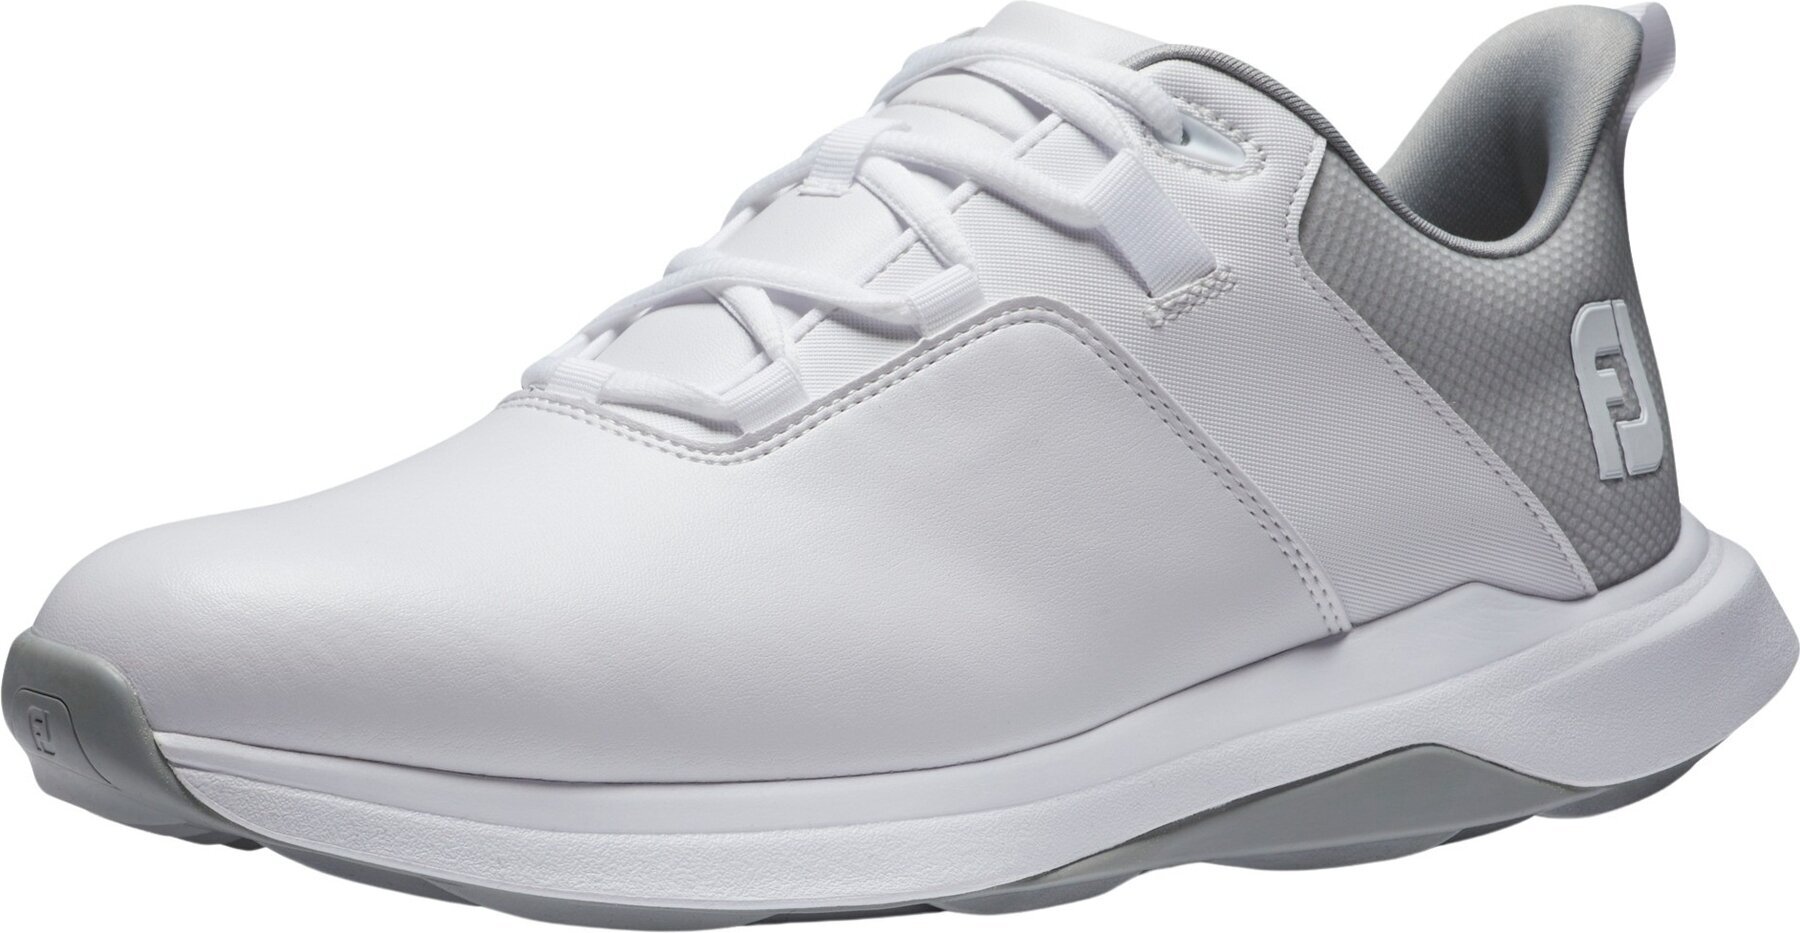 Footjoy ProLite Mens Golf Shoes White/Grey 45